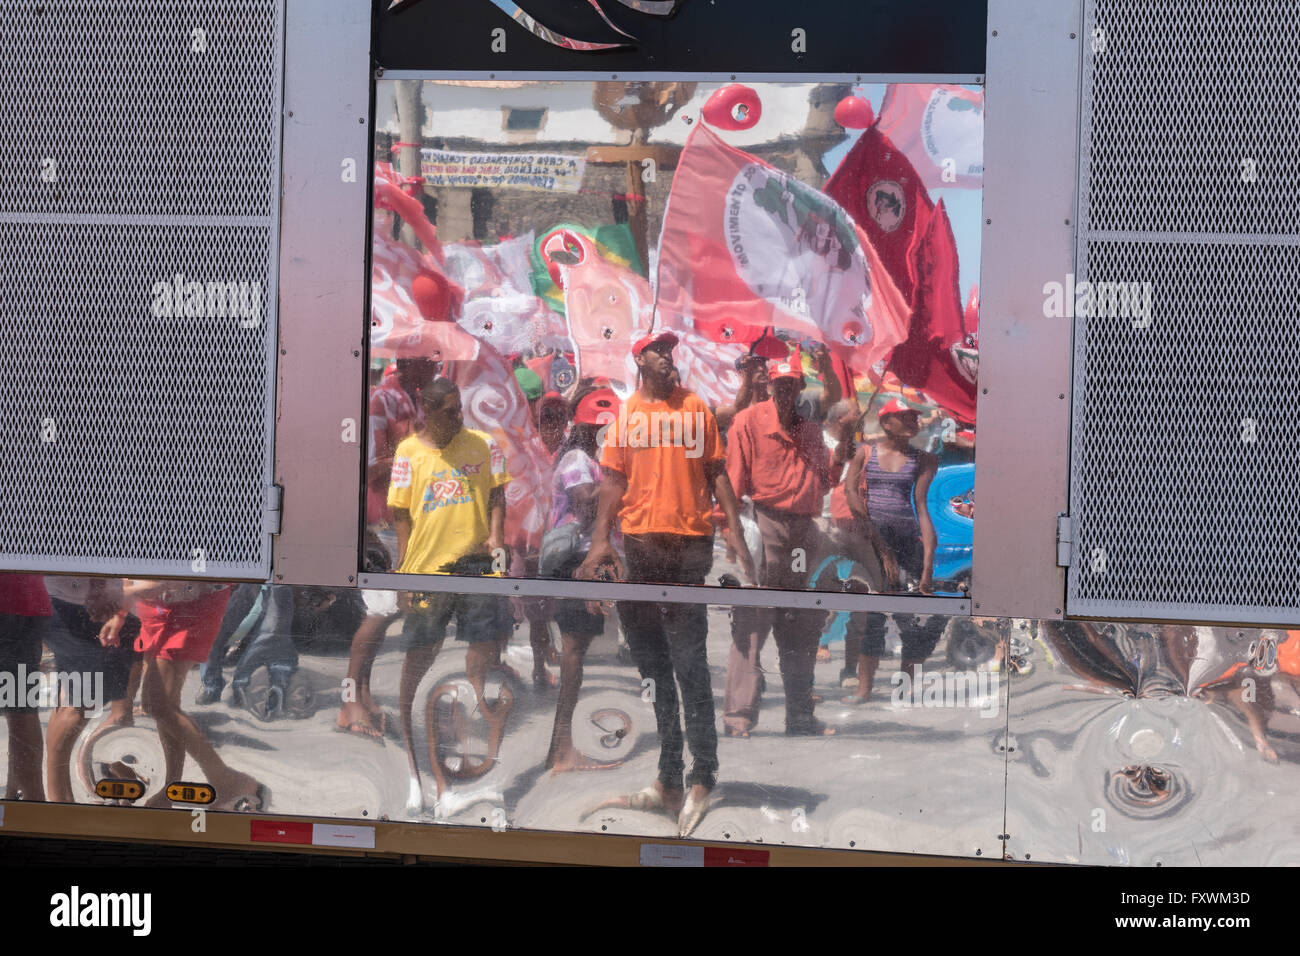 Salvador, Bahia, Brasil. El 17 de abril, 2016. Protesta contra la destitución del Presidente del Brasil Dilma Rousseff. Crédito: Andrew Kemp/Alamy Live News Foto de stock